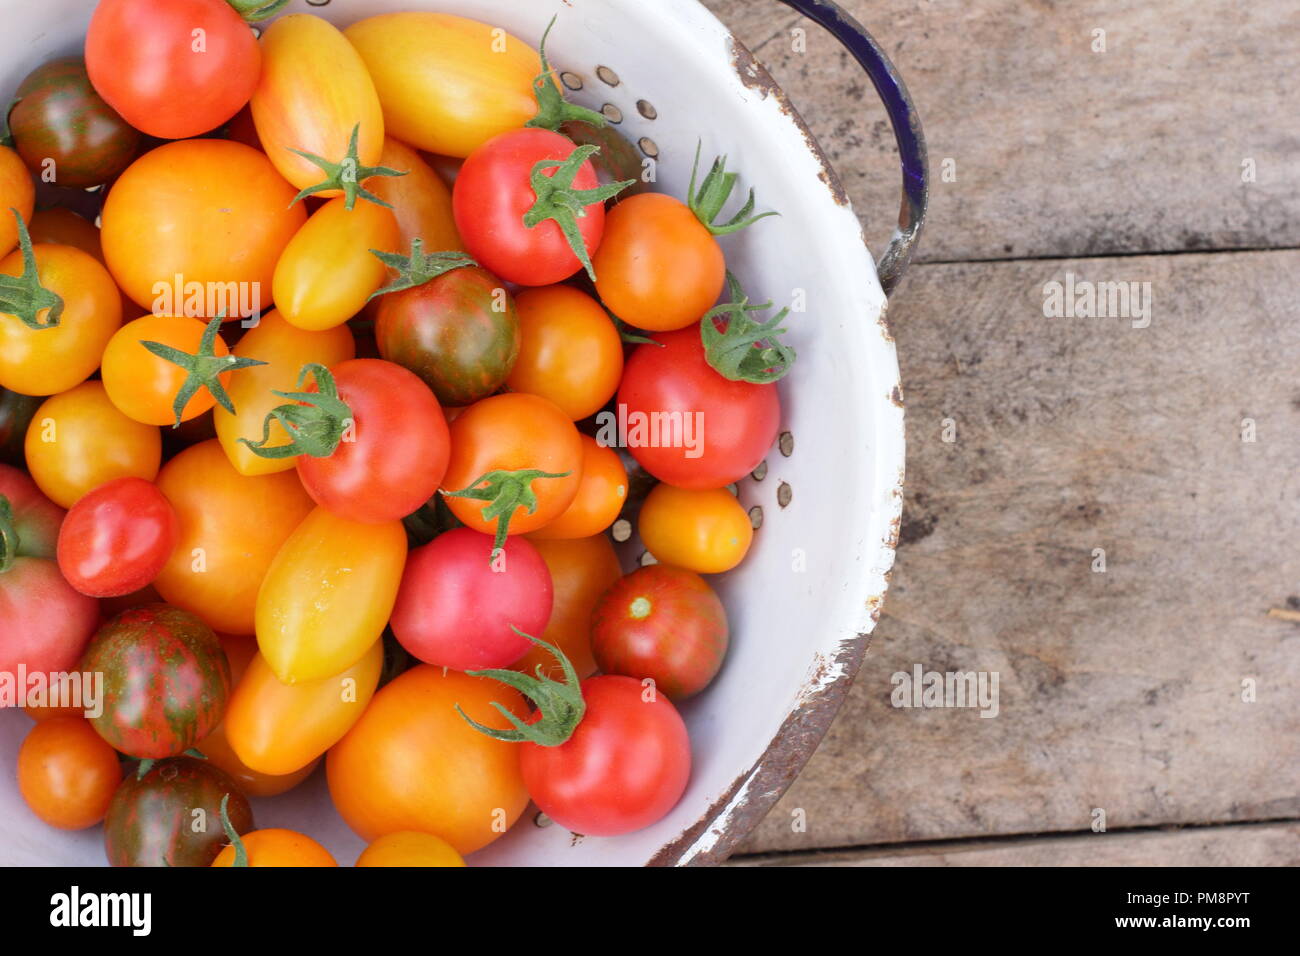 Tomates dans la passoire vue de dessus.Tomates maison fraîchement cueillies - Chadwick's Cherry et Black Zebra dans la passoire d'émail, Royaume-Uni Banque D'Images